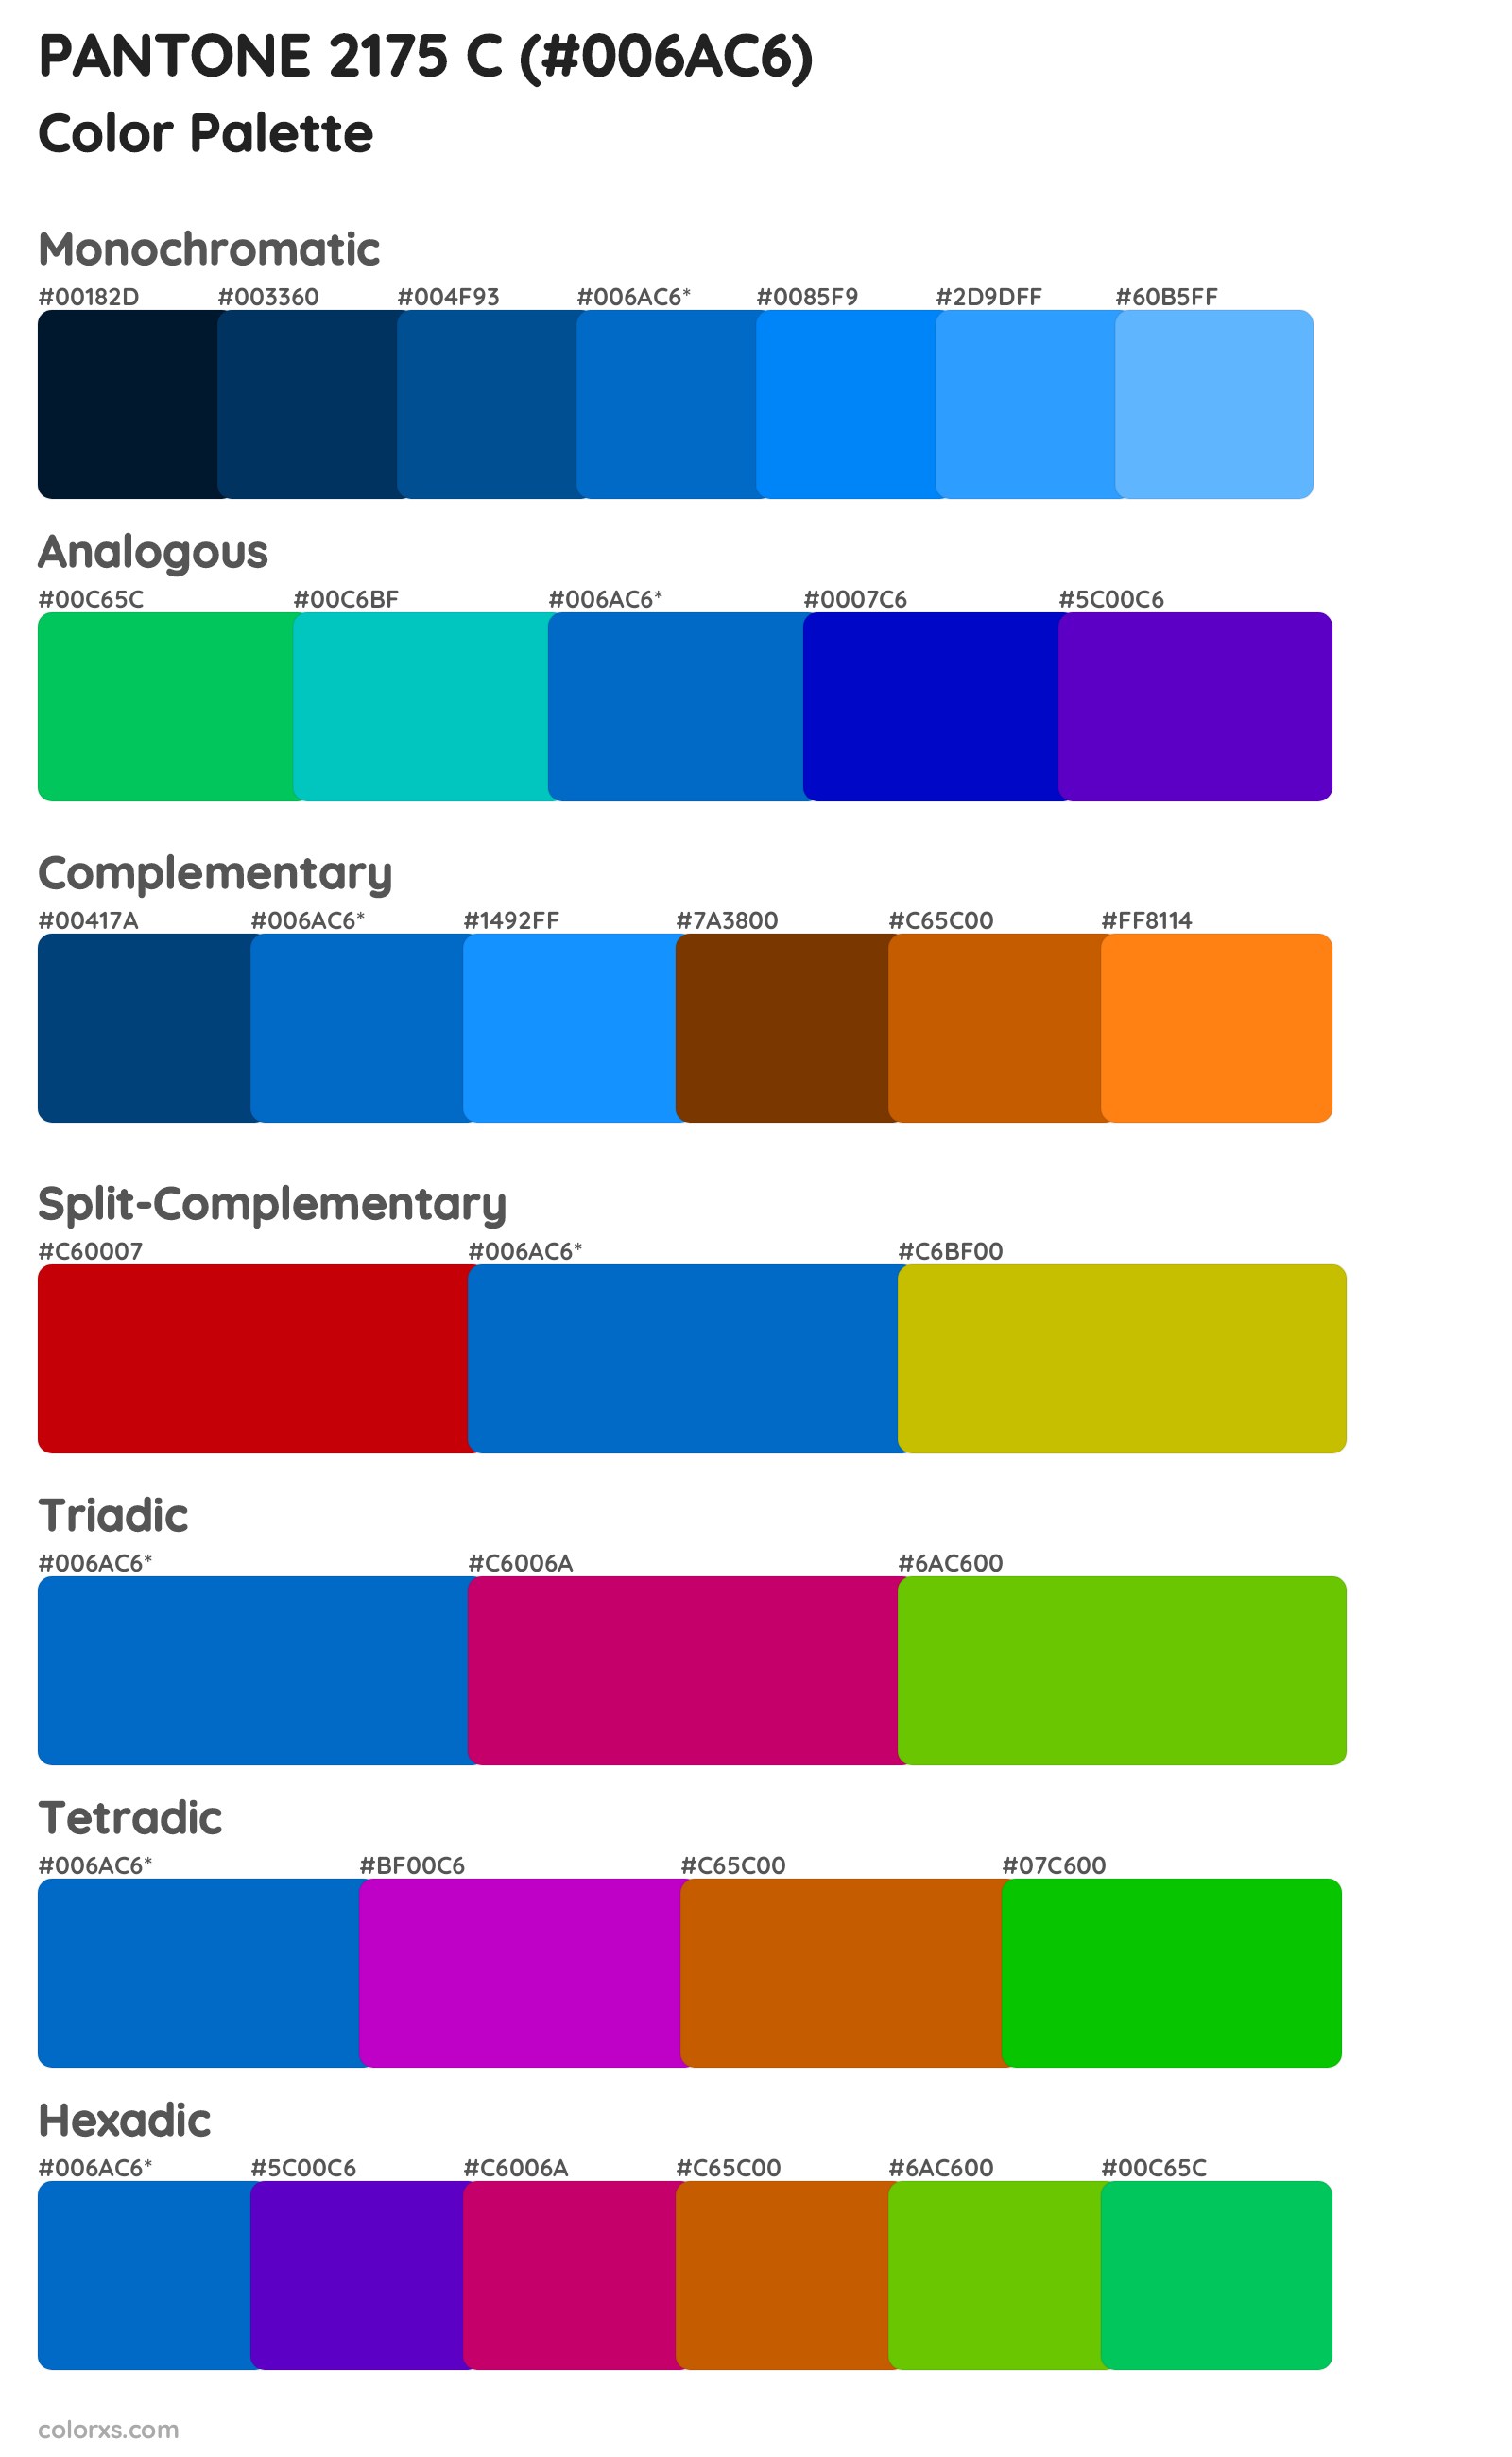 PANTONE 2175 C Color Scheme Palettes